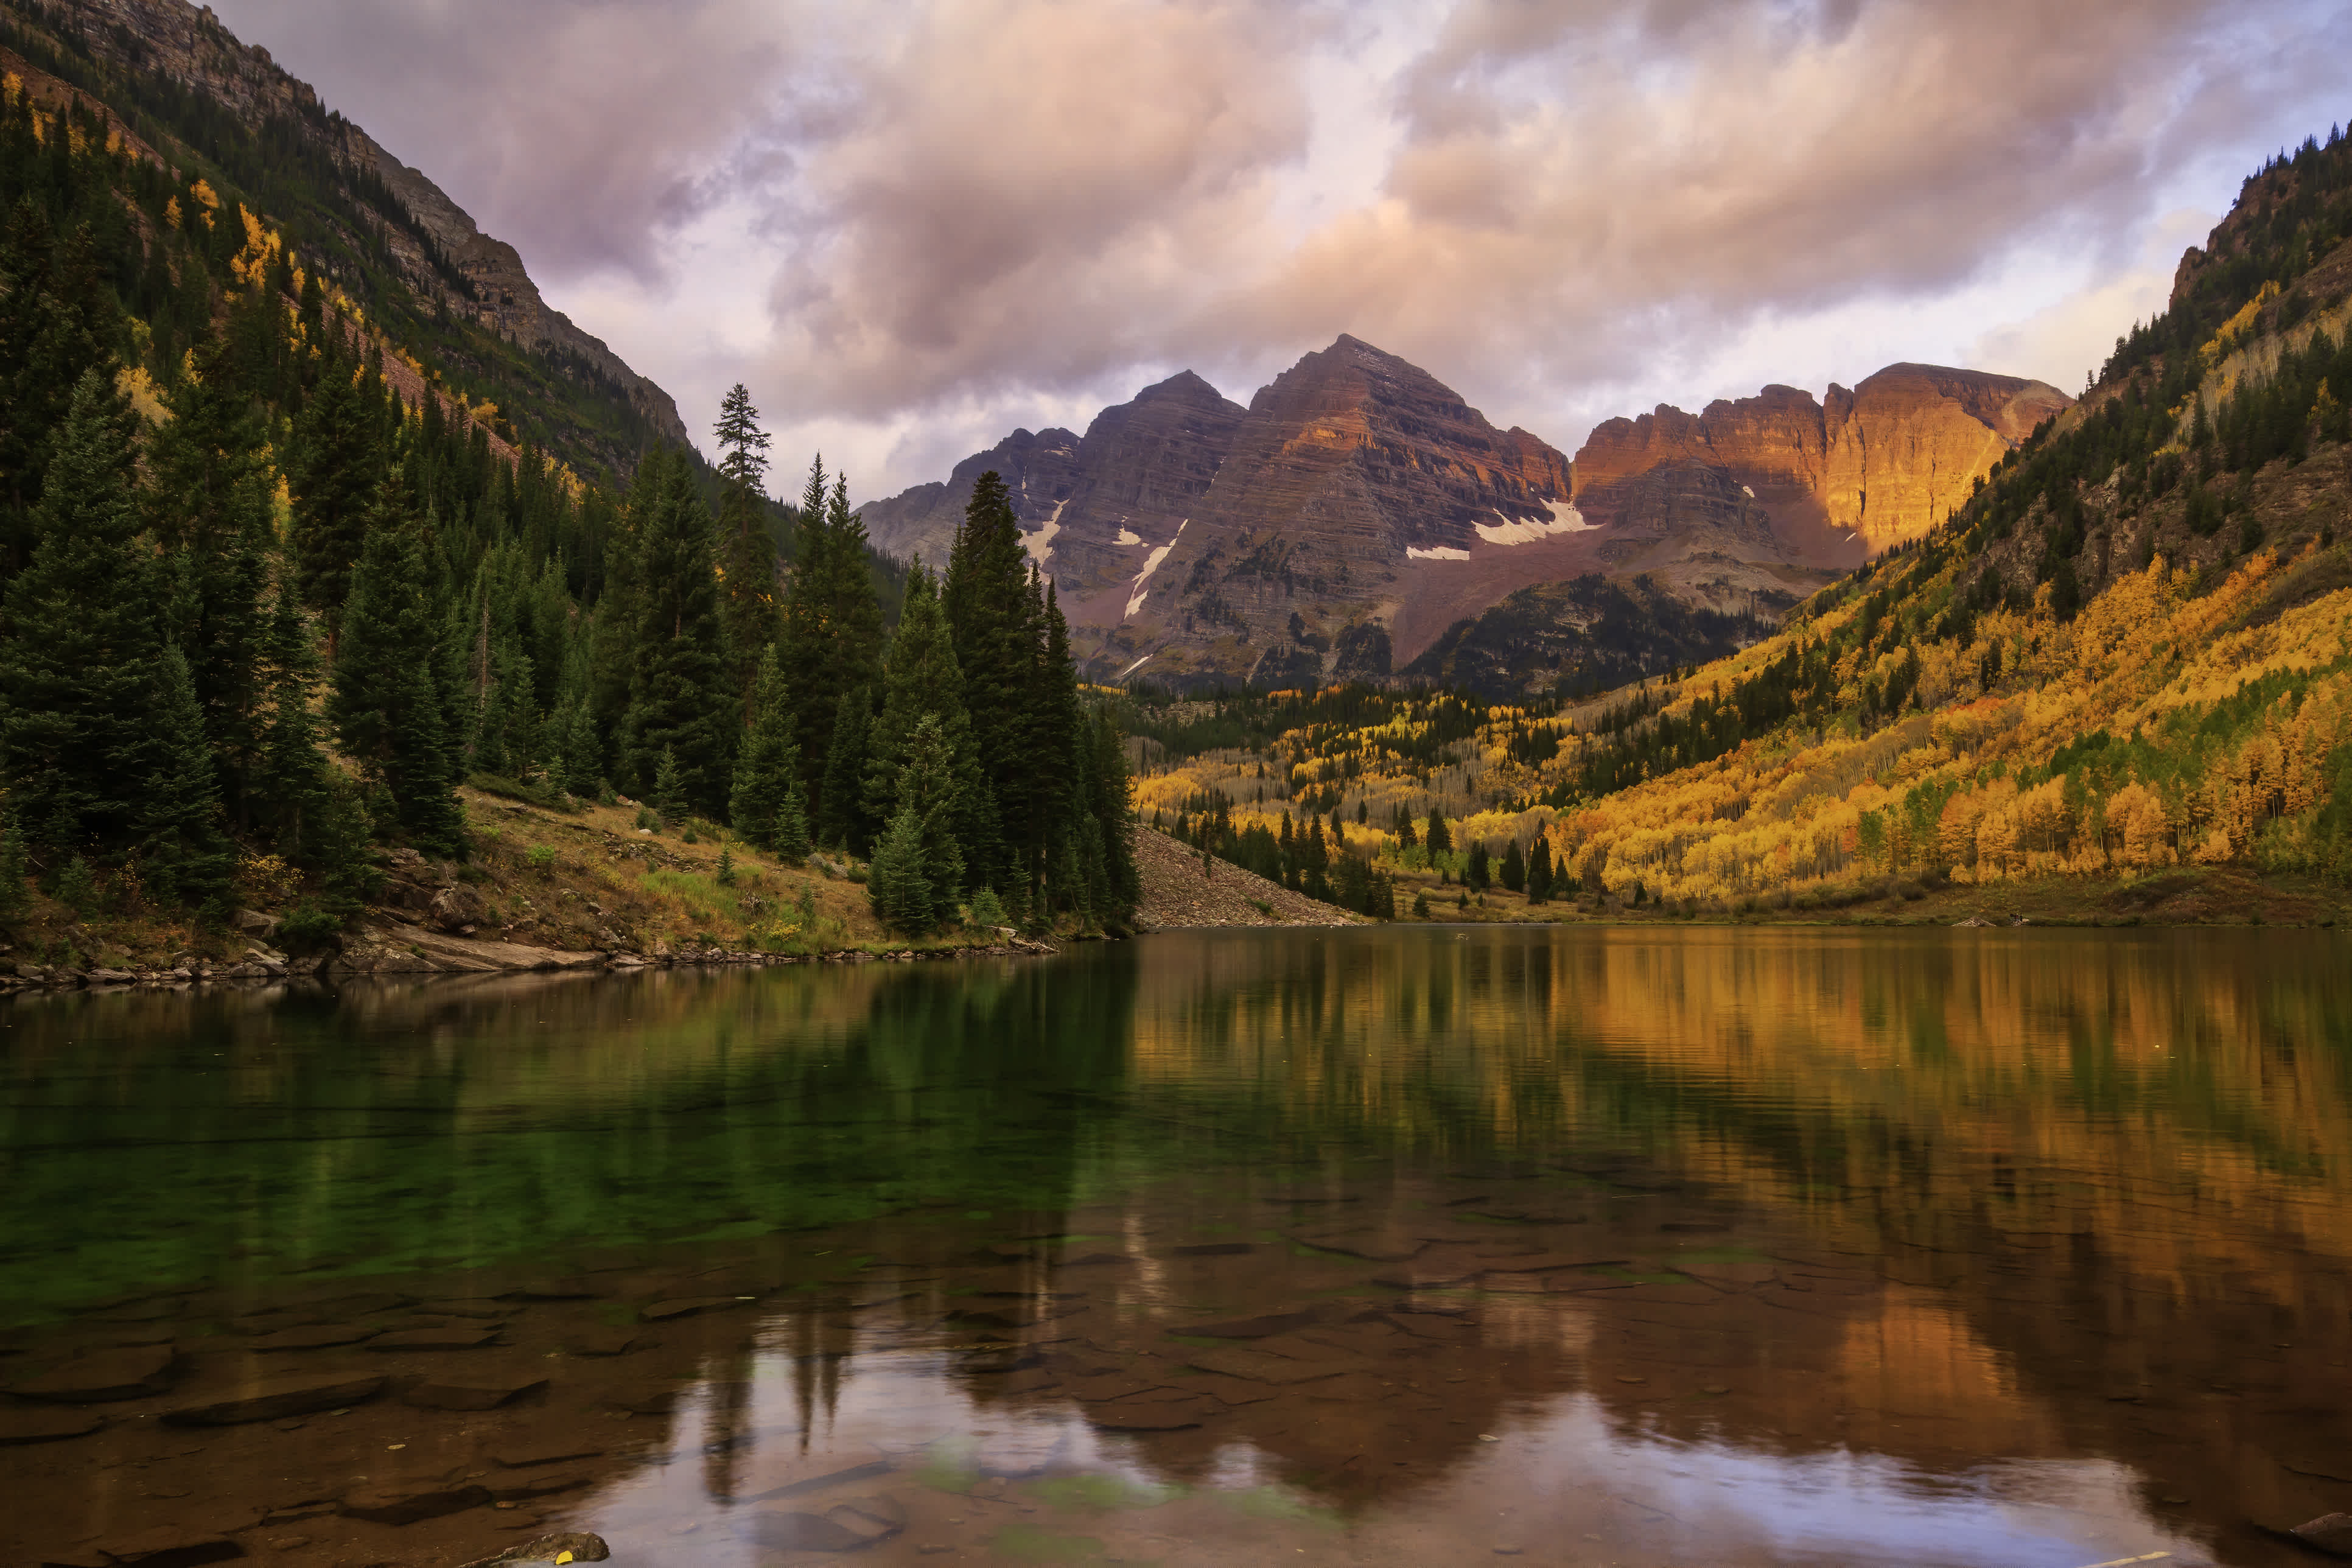 Découvrez une nature intacte lors de votre road trip au Colorado, comme ici au pied des montagnes Maroon Bells.